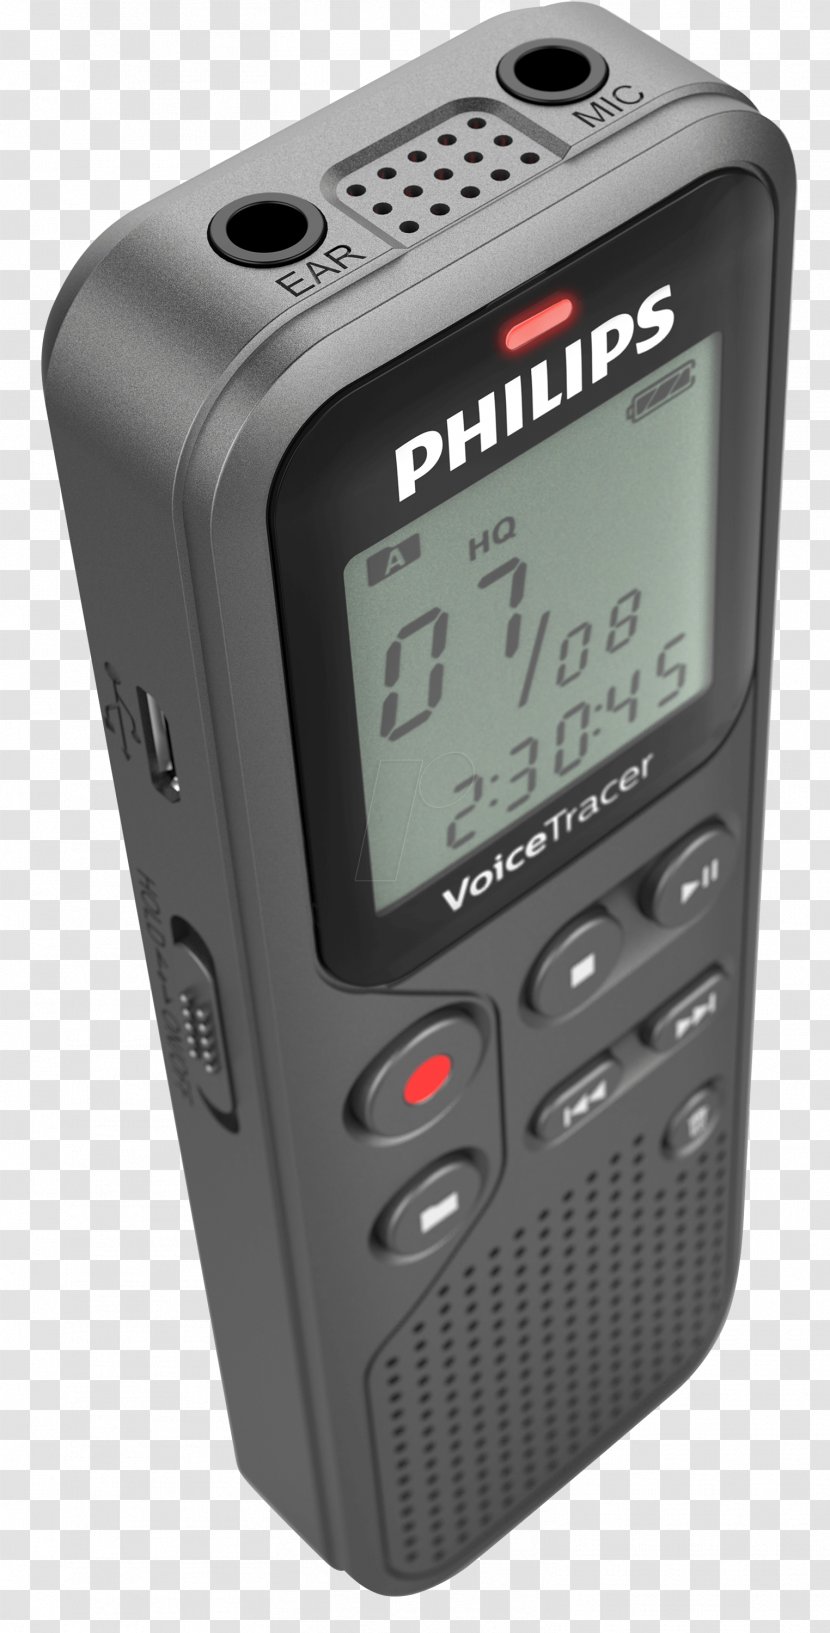 Philips Voice Tracer DVT2510 Dictation Machine Electronics Accessory - Dvt2510 Transparent PNG